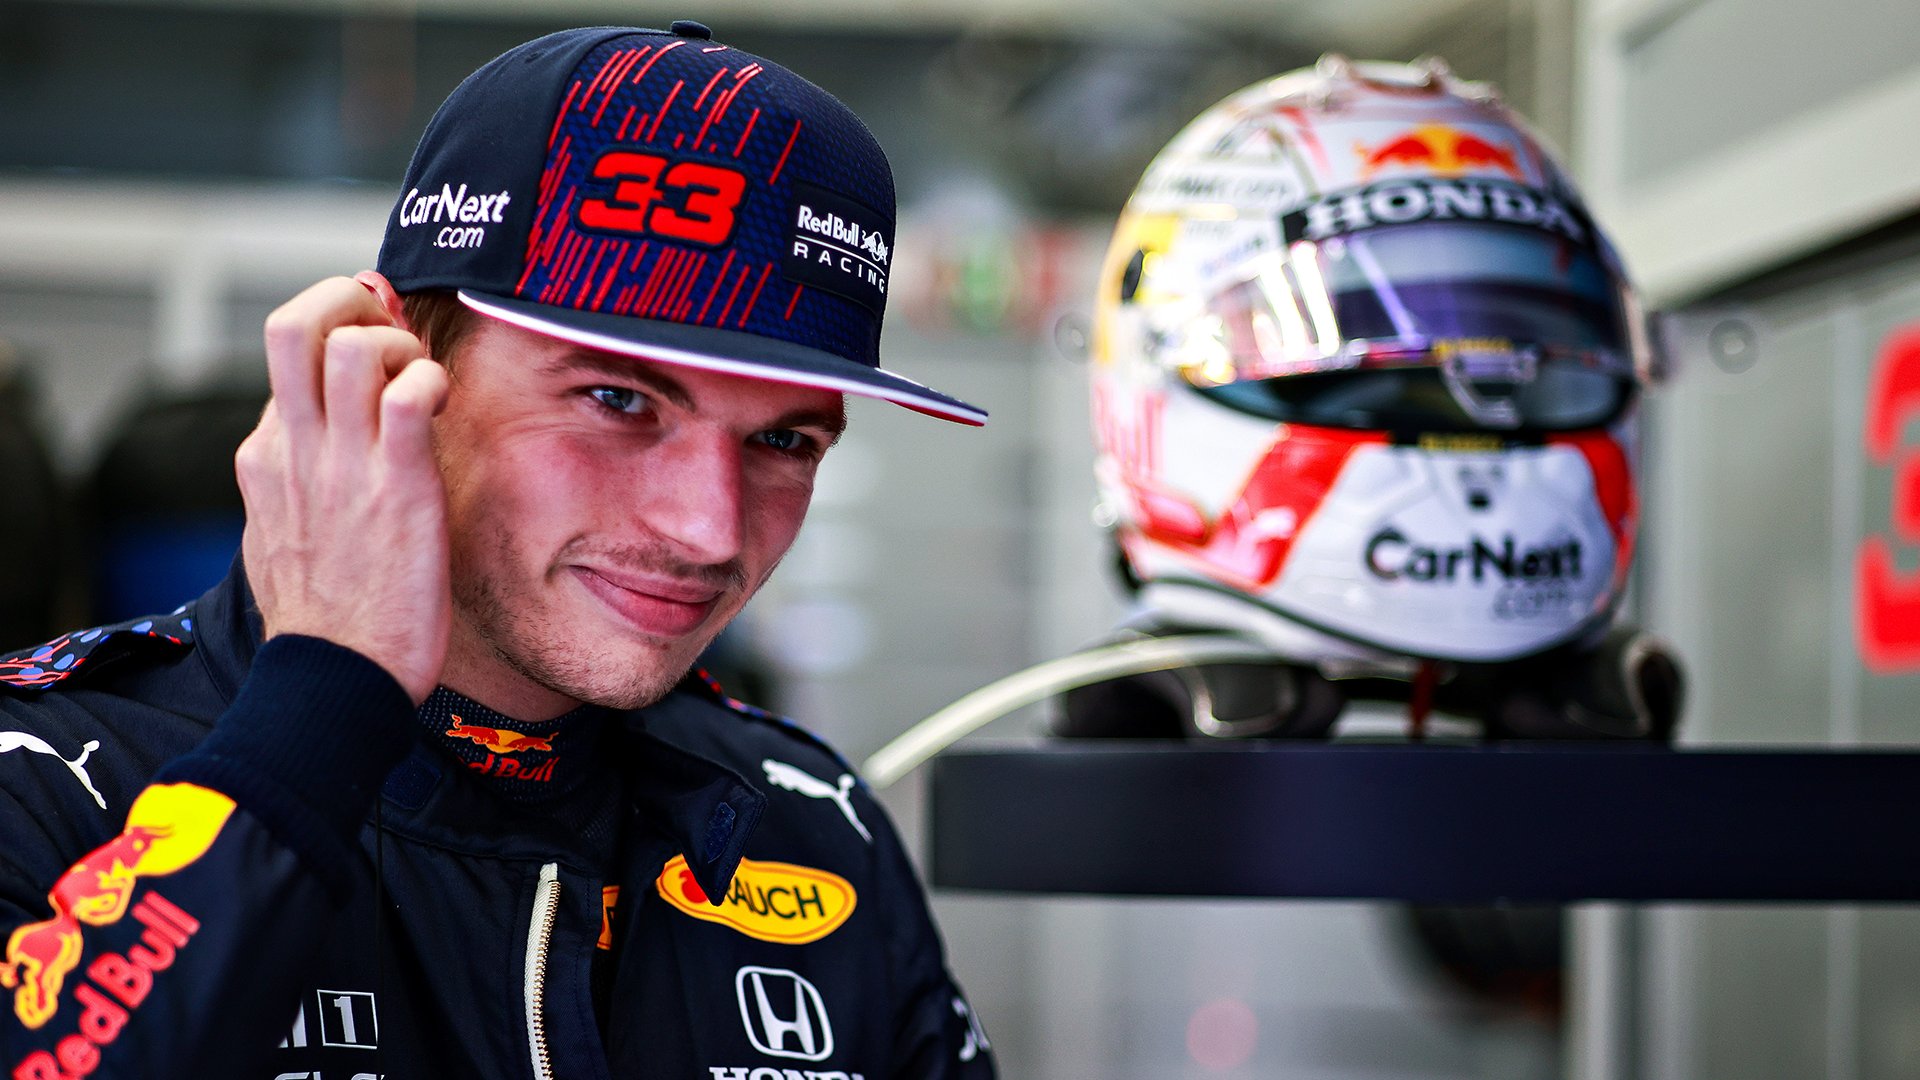 F1 - Max Verstappen : "Je suis prêt pour la bataille"